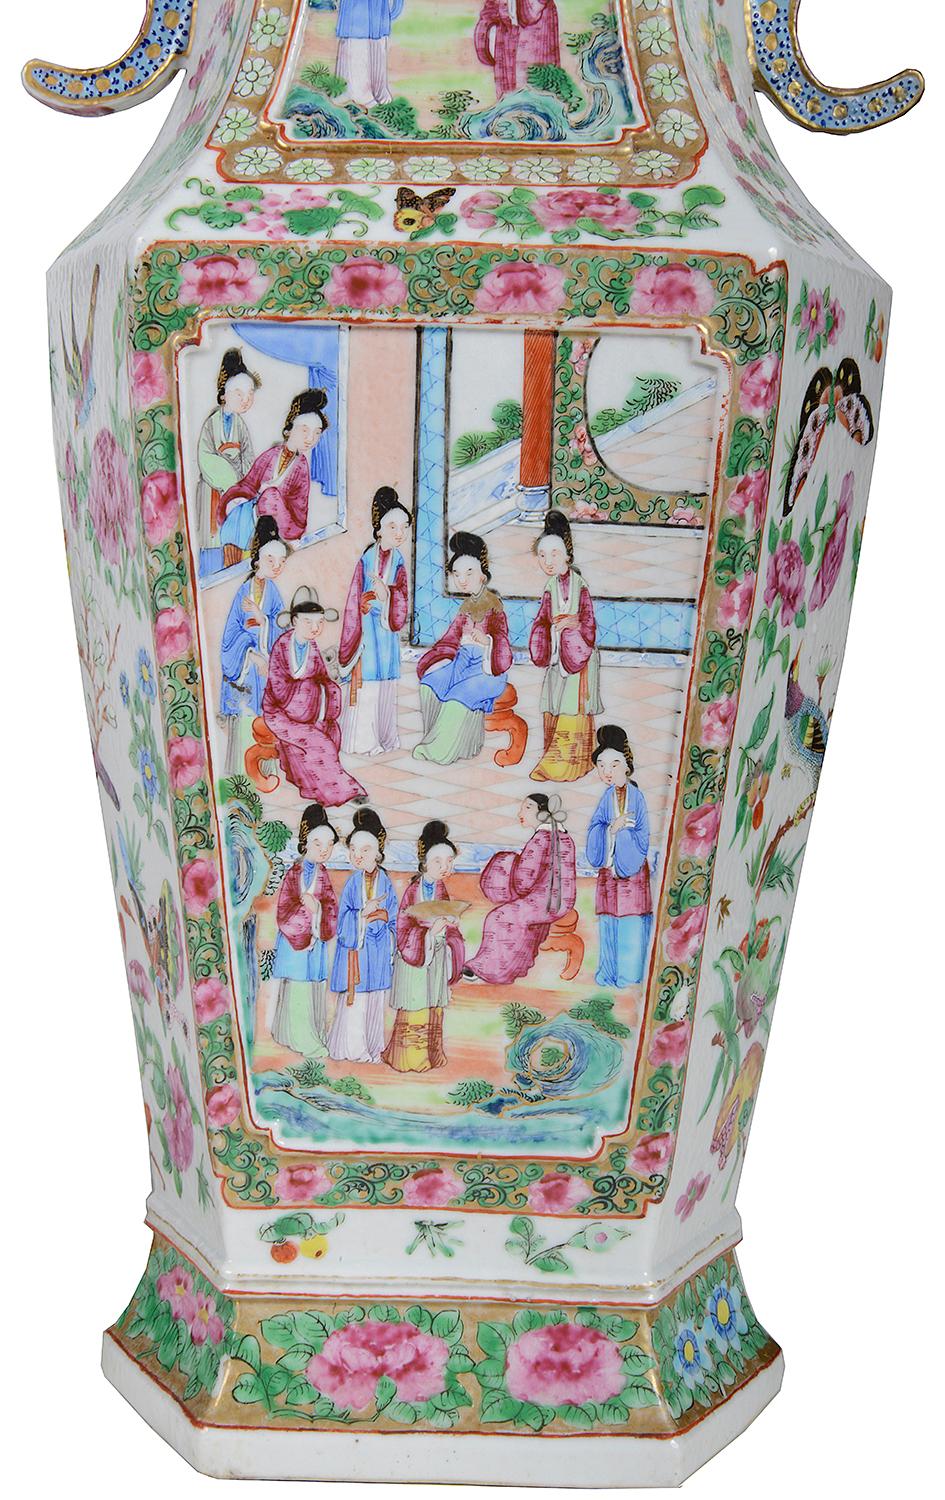 Paire de vases à médaillon cantonais / rose de très bonne qualité, datant du 19e siècle, chacun ayant un fond vert classique avec une décoration florale rose, des poignées bleues percées de chaque côté, des panneaux peints à la main représentant des